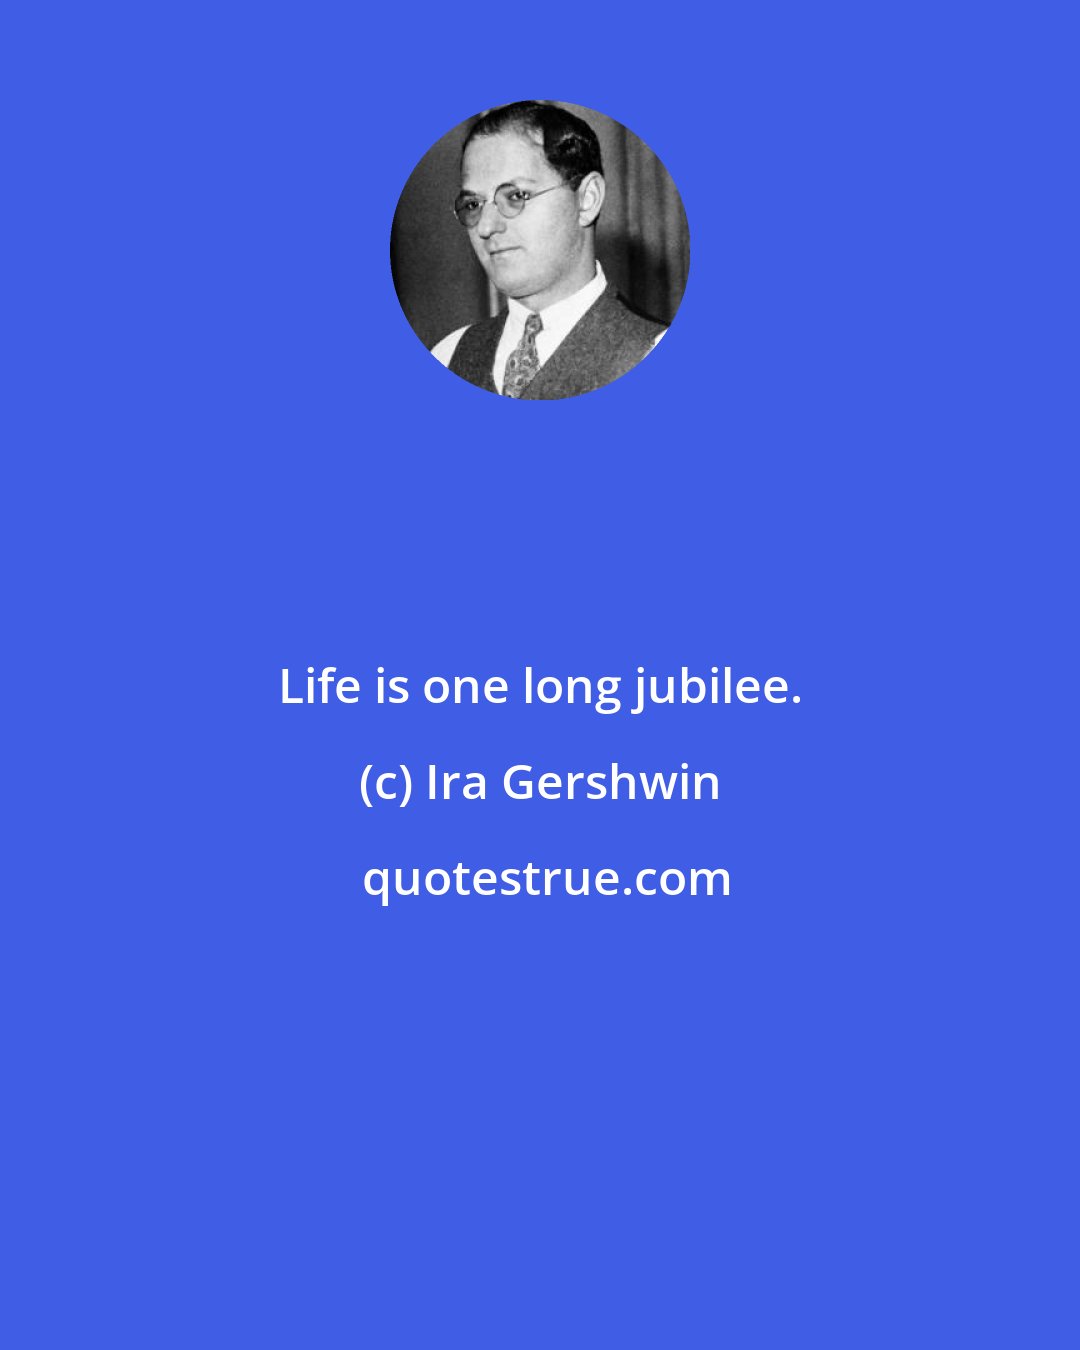 Ira Gershwin: Life is one long jubilee.